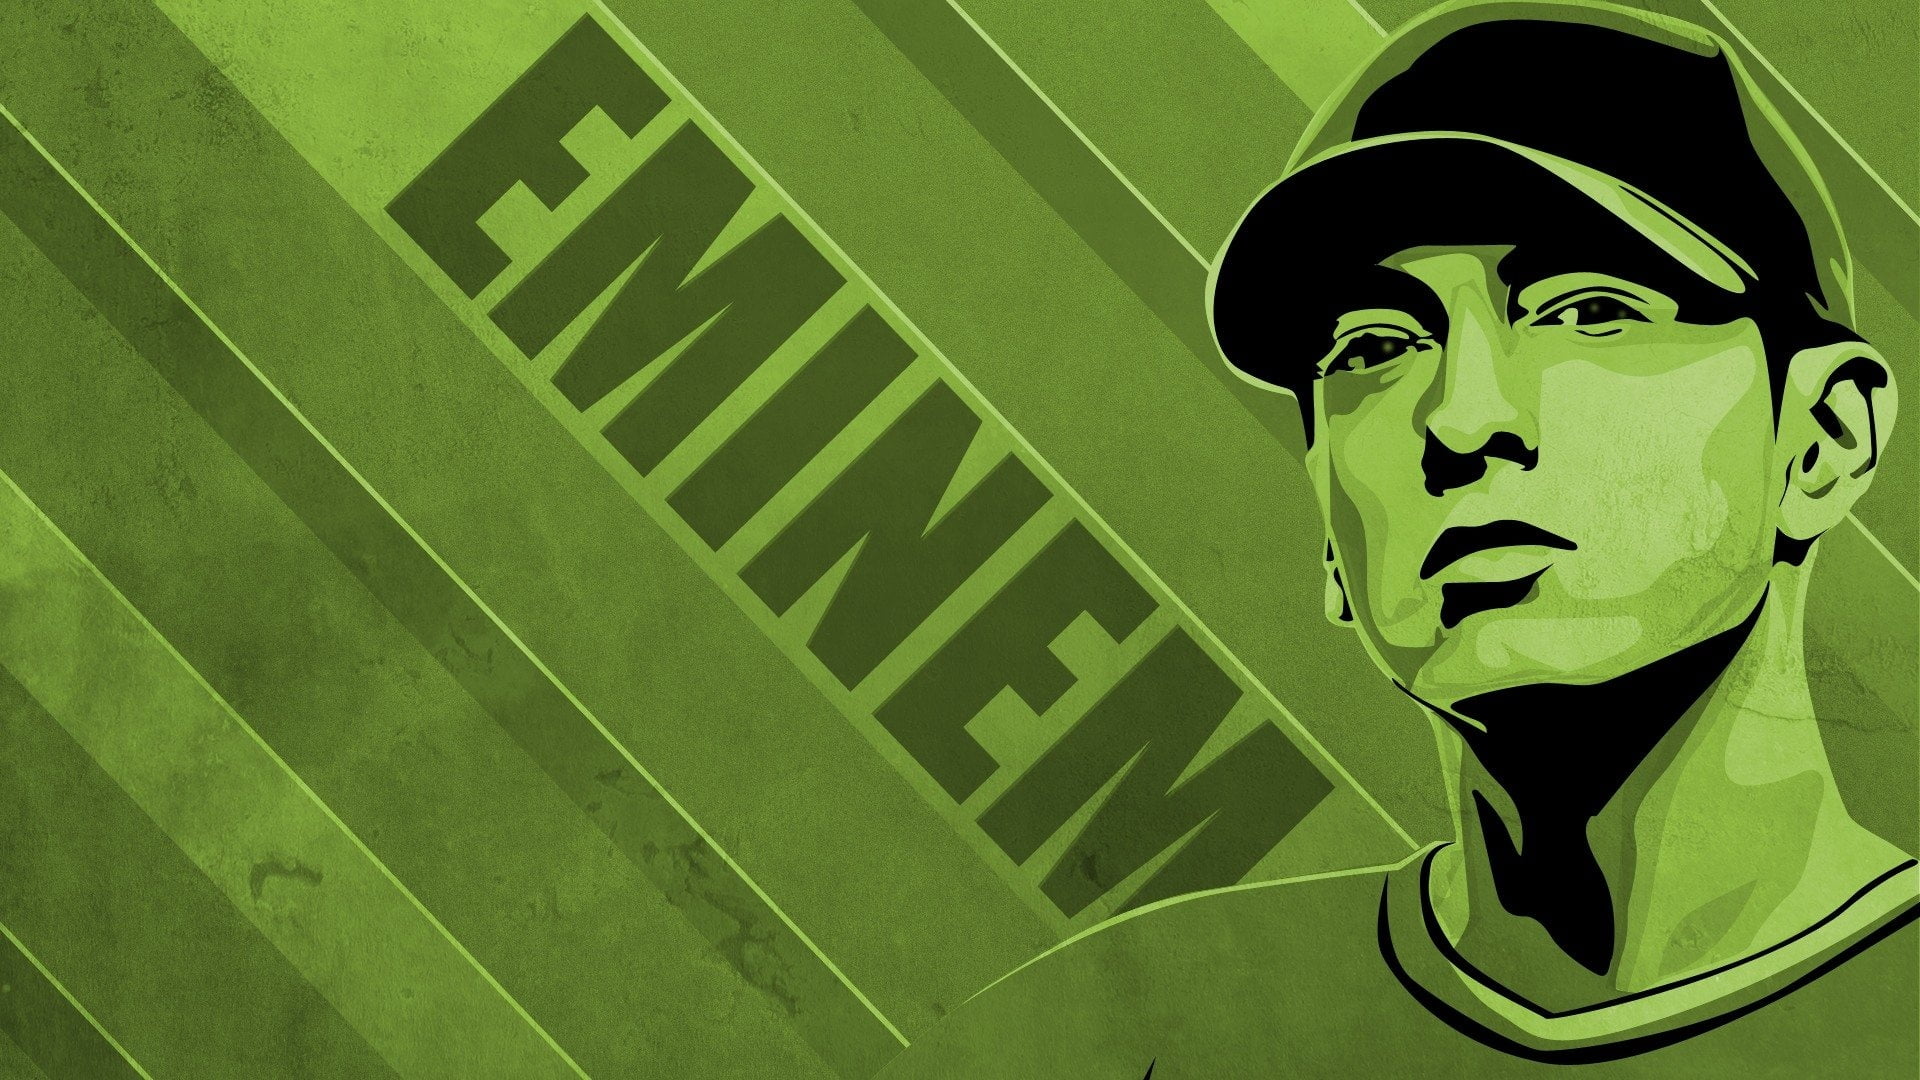 Eminem rapper